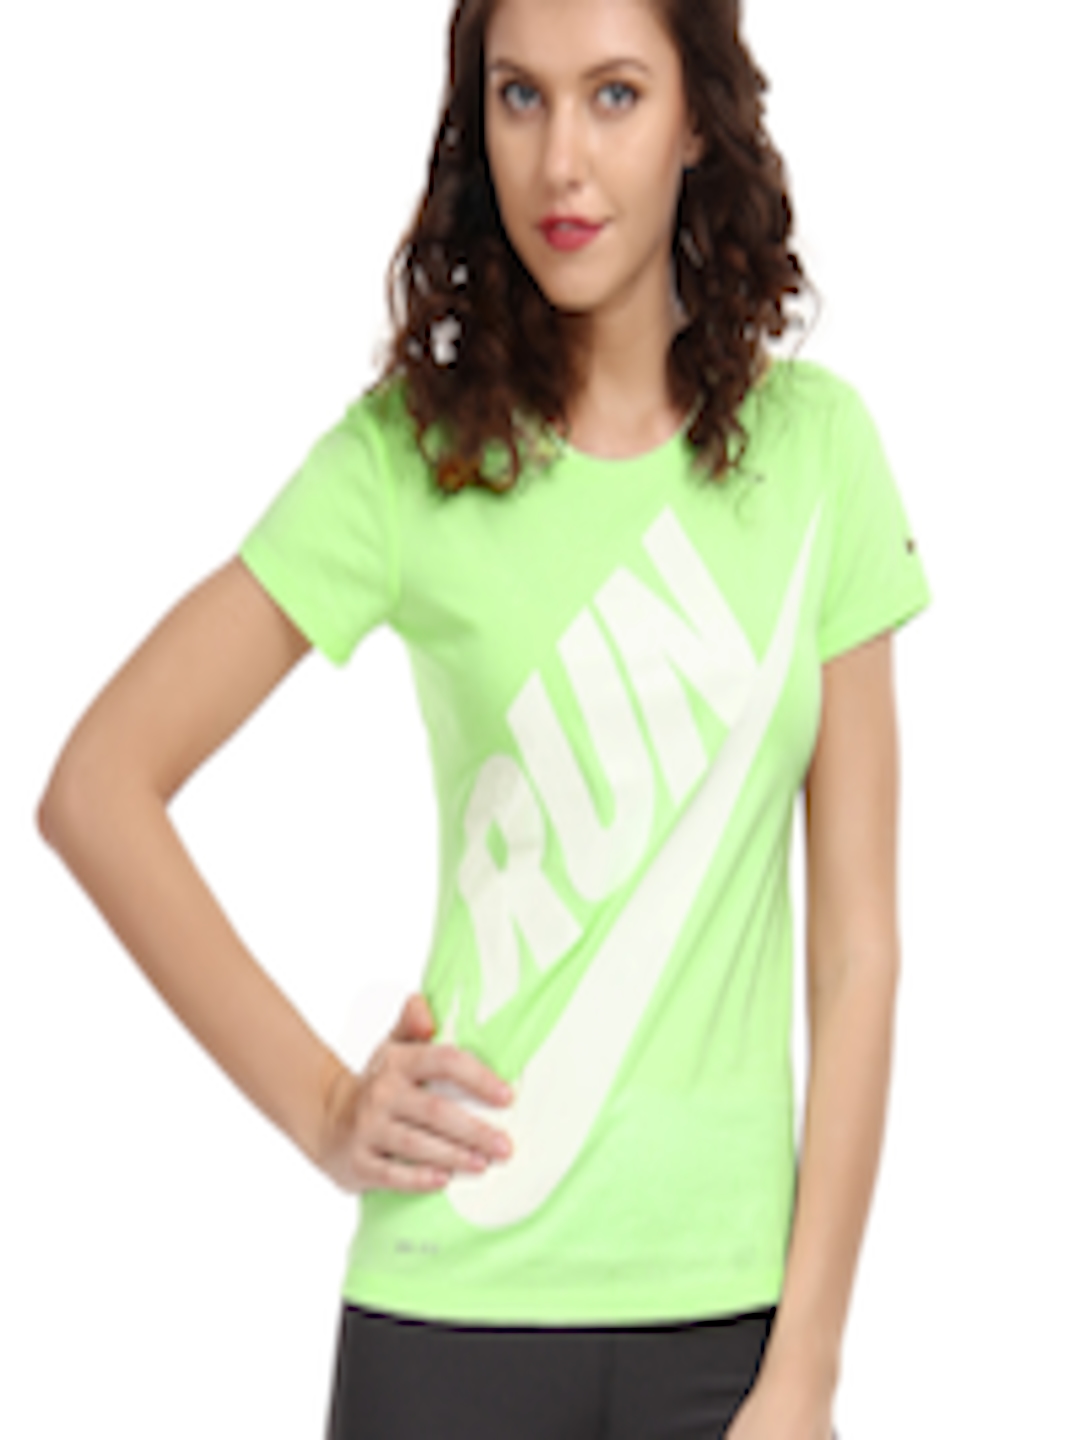 Buy Nike Women Fluorescent Green Running T Shirt - Tshirts for Women ...